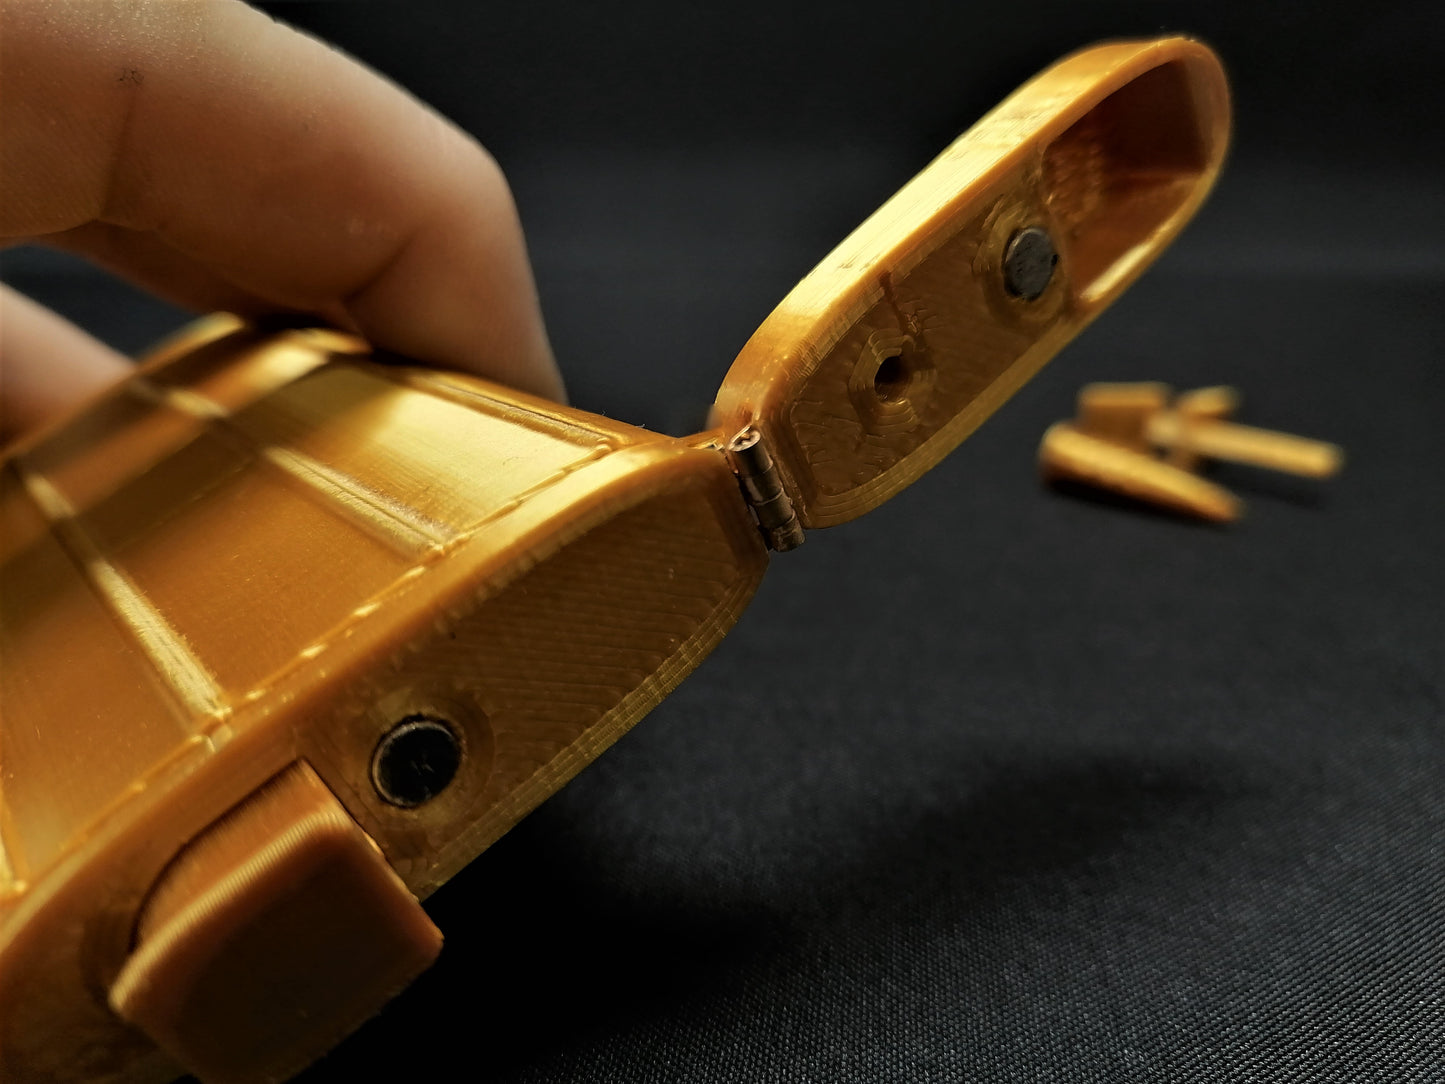 GOLD GUN MK-ii - Film Prop - 3D Printed Replica